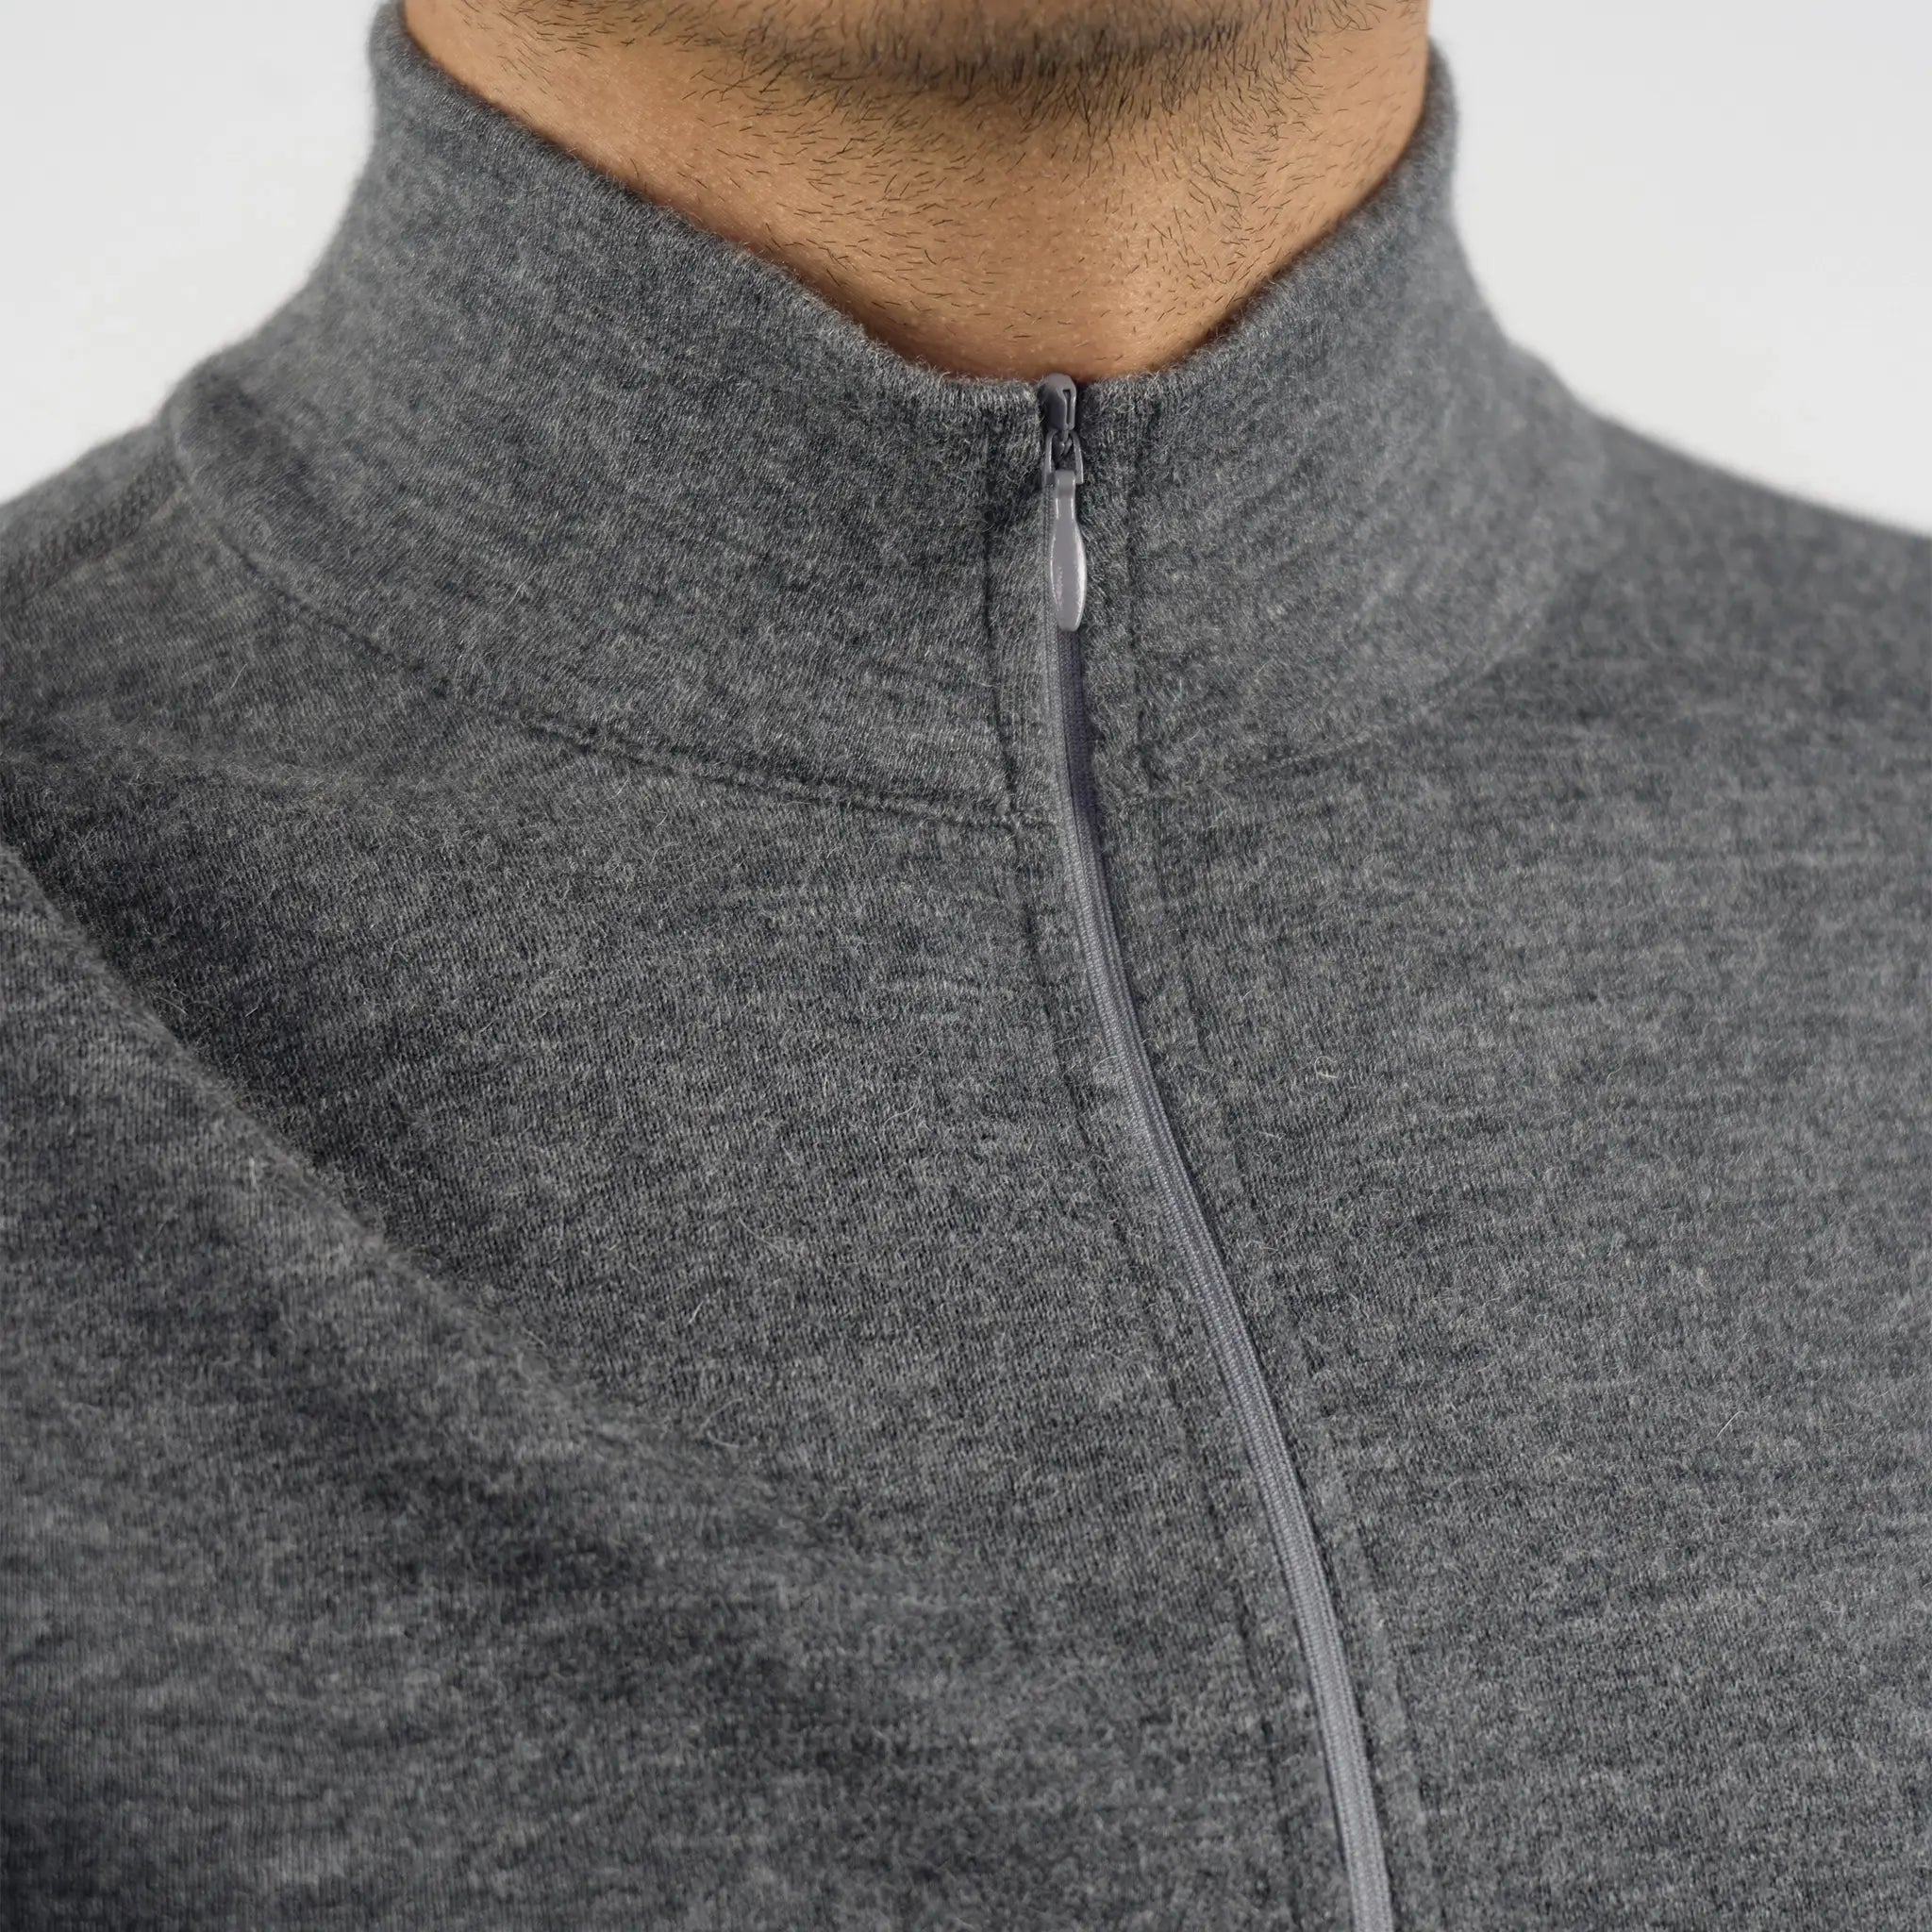 Men's Alpaca Wool Base Layer: 300 Lightweight Half-Zip color Gray